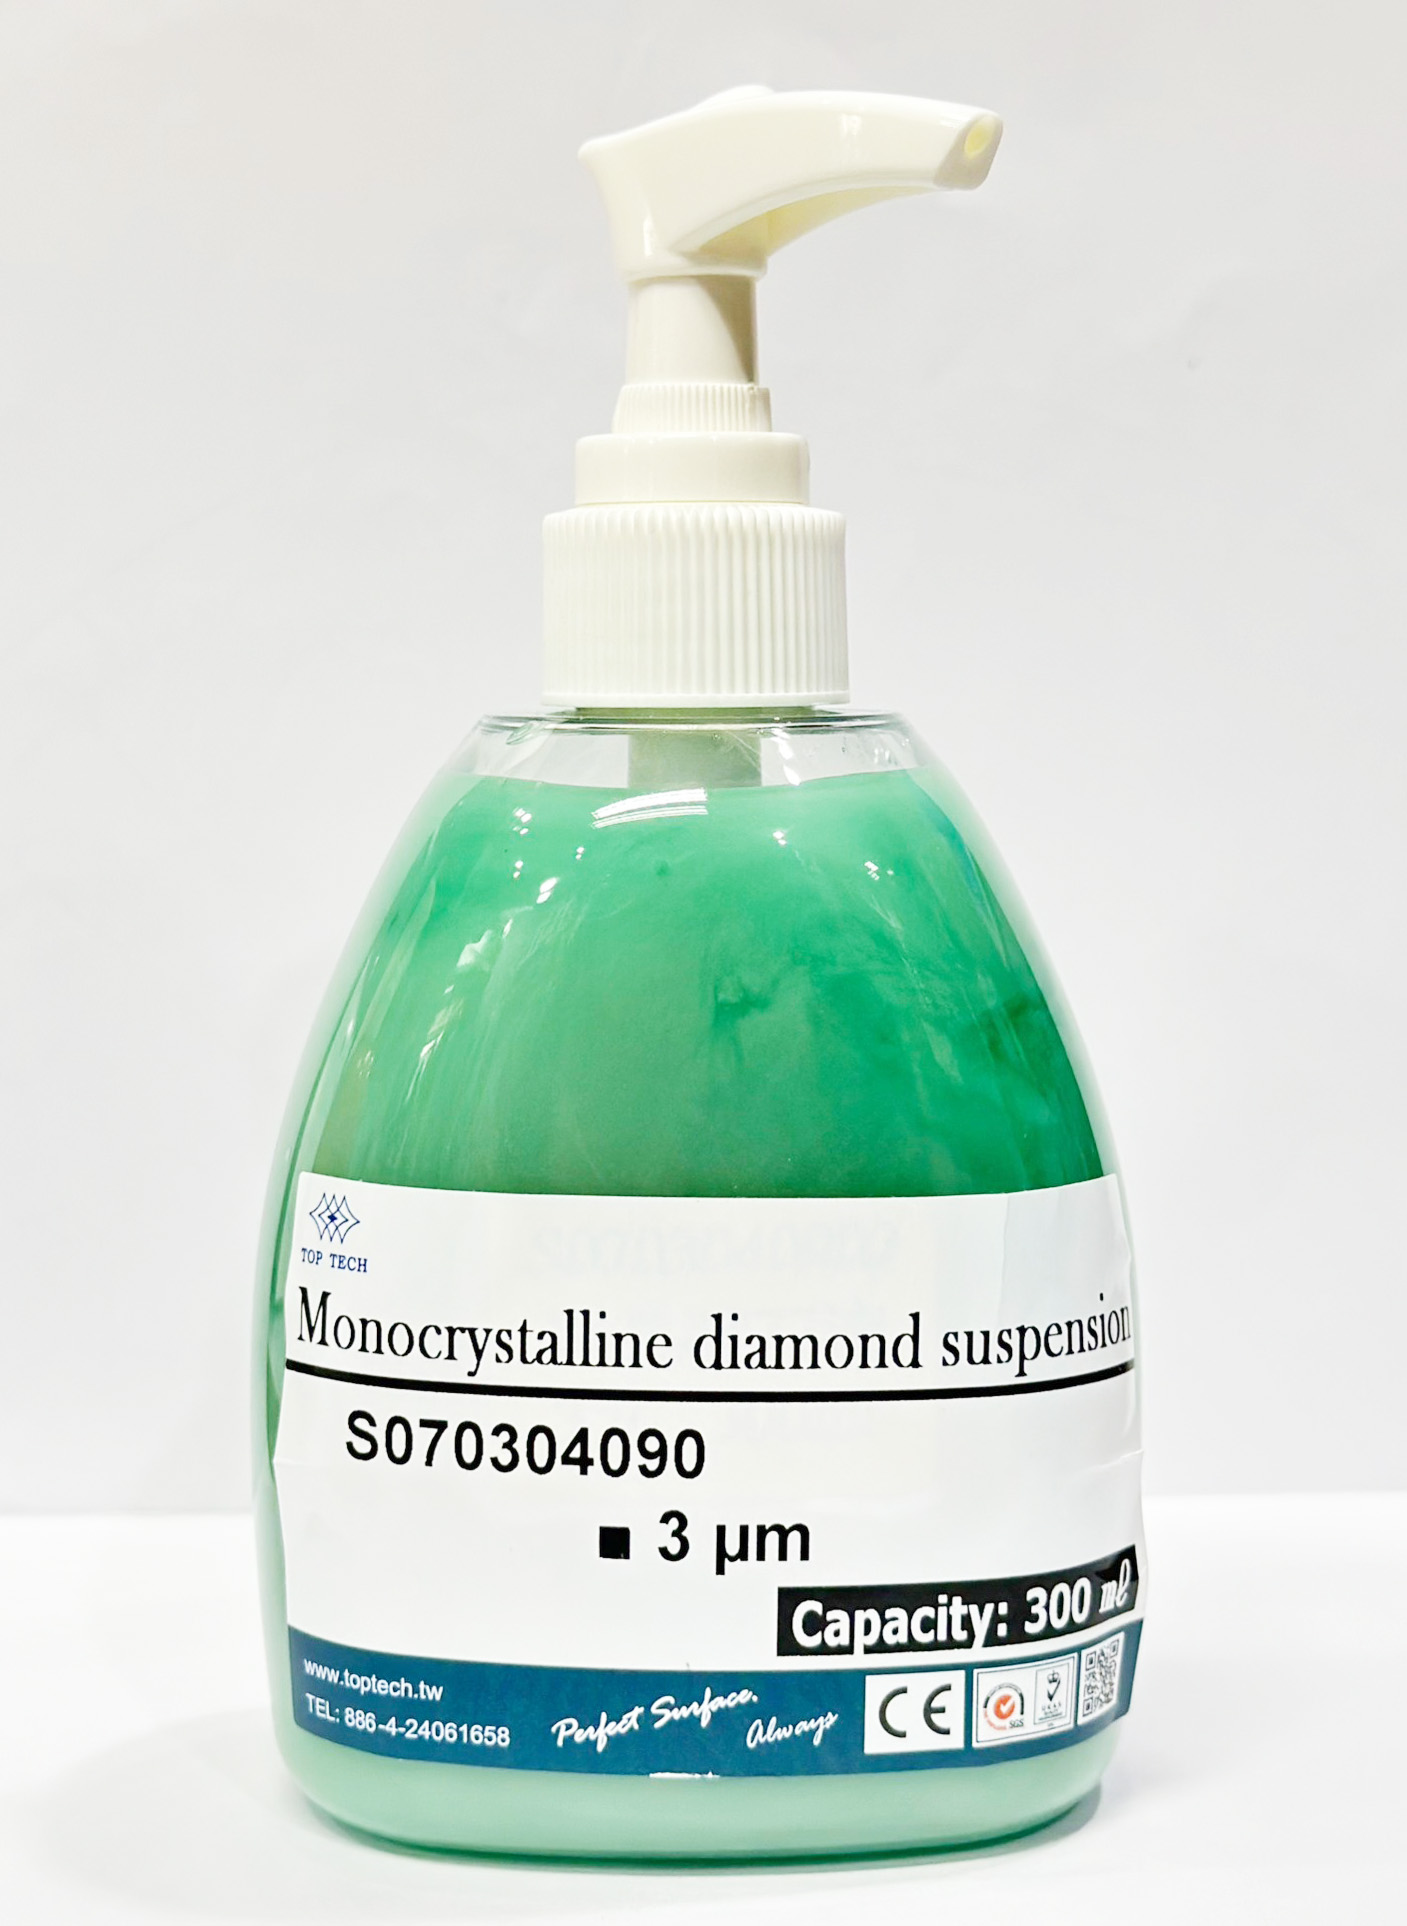 น้ำยาขัดละเอียด สำหรับ พื้นผิววิทยา (Monocrystalline diamond suspension) ยี่ห้อ TOP TECH